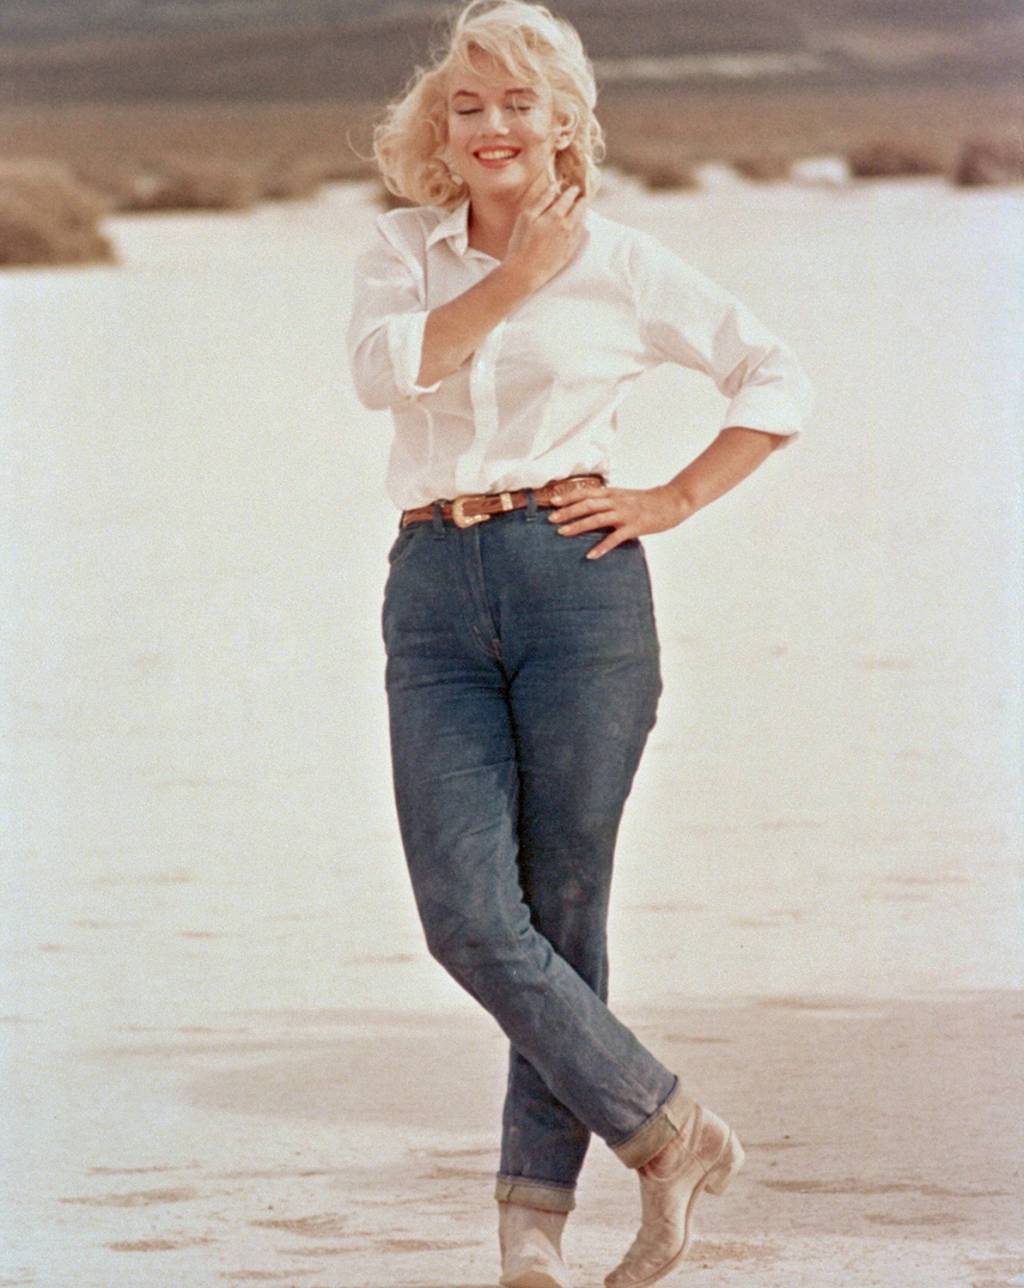 GLAMOUR - Anos 1950 e 1960 - Adotado por estrelas de Hollywood, como Marilyn Monroe, virou sinônimo de possibilidade aos comuns dos mortais: “Eu também quero ser assim”.